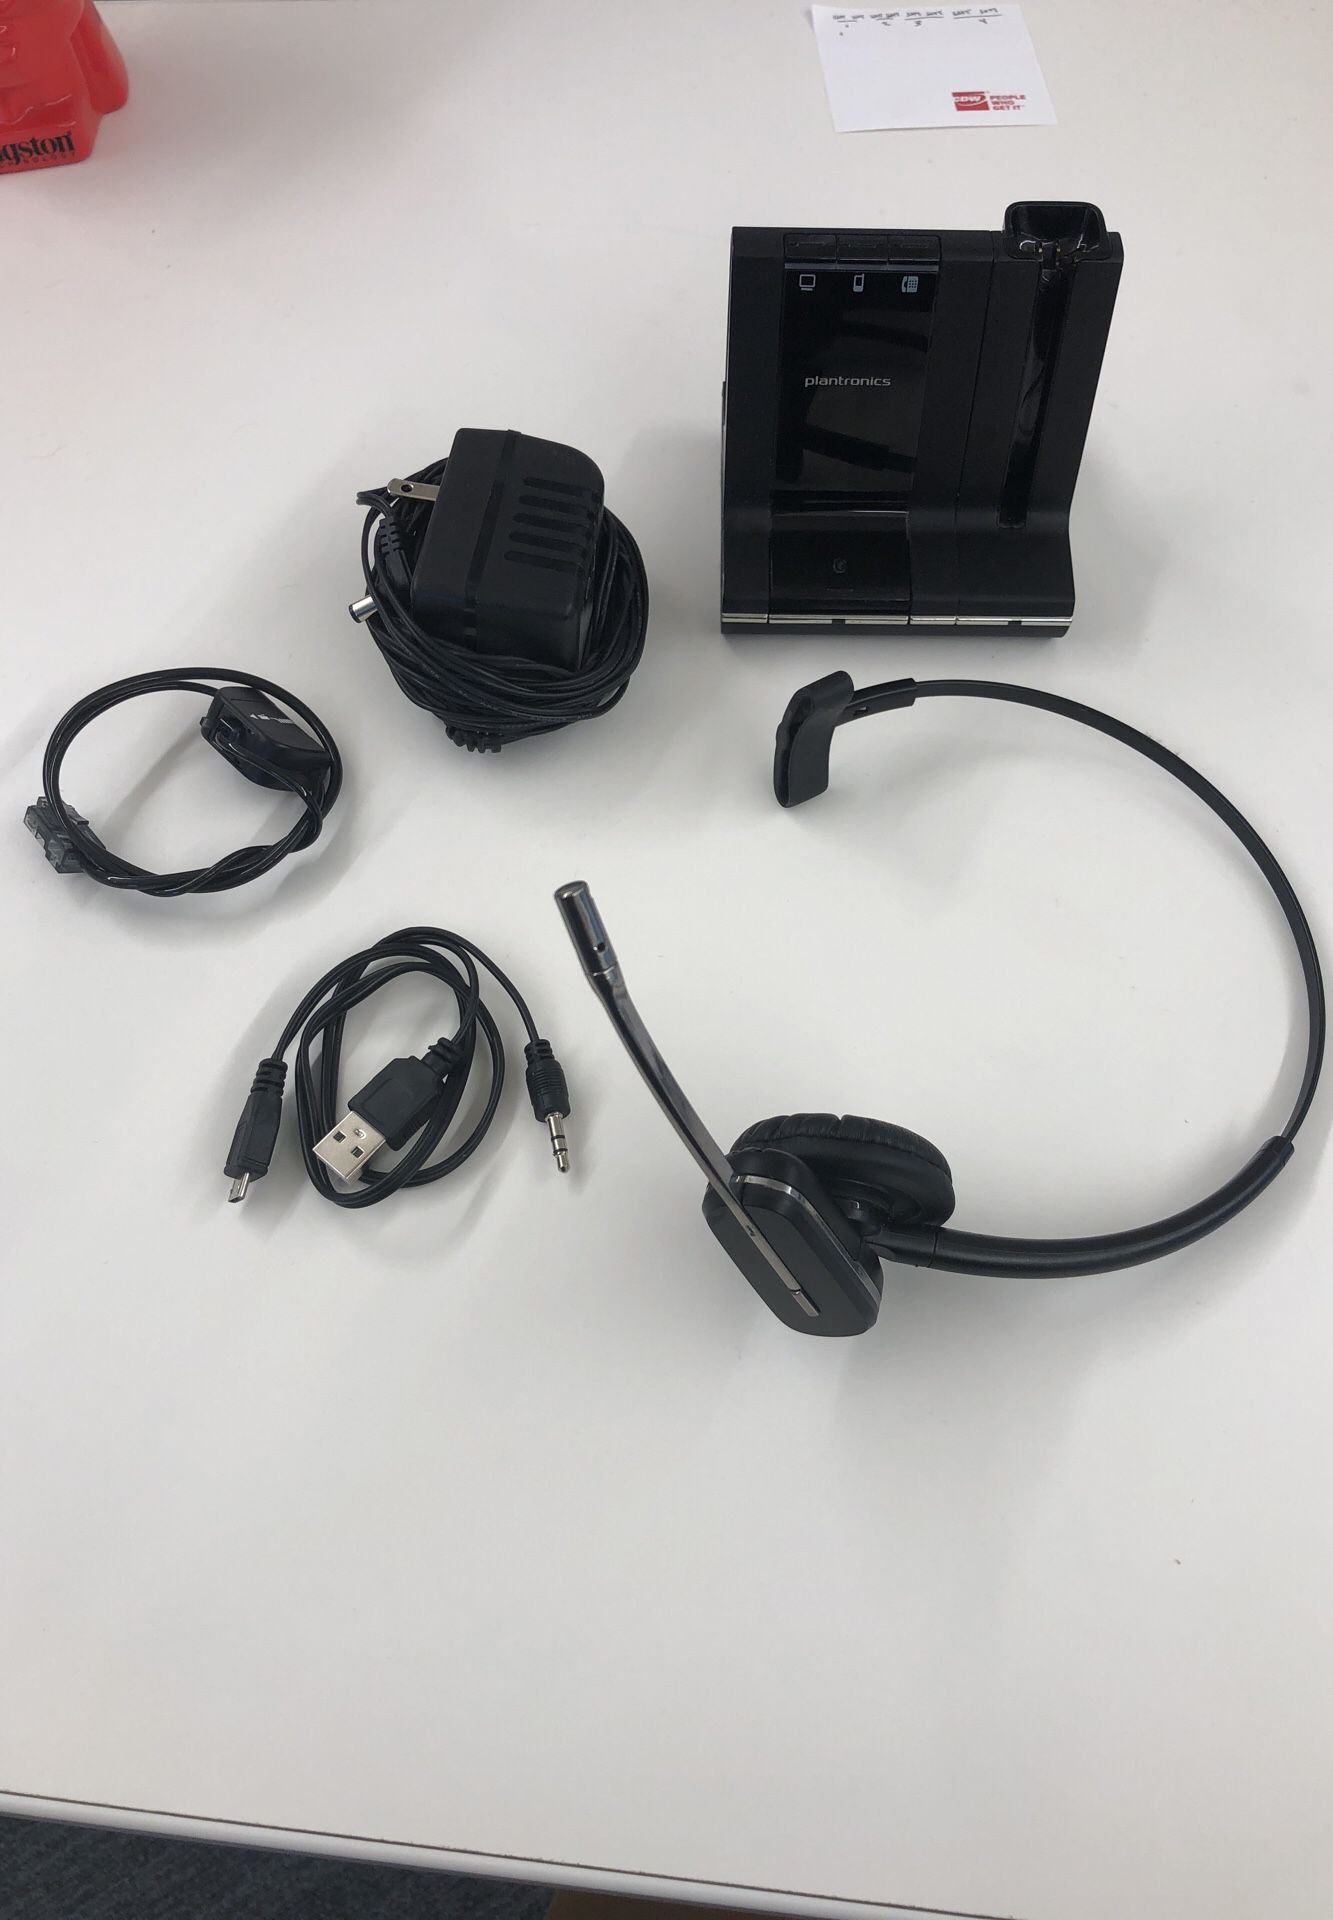 Plantronics Savi w745 wireless headset